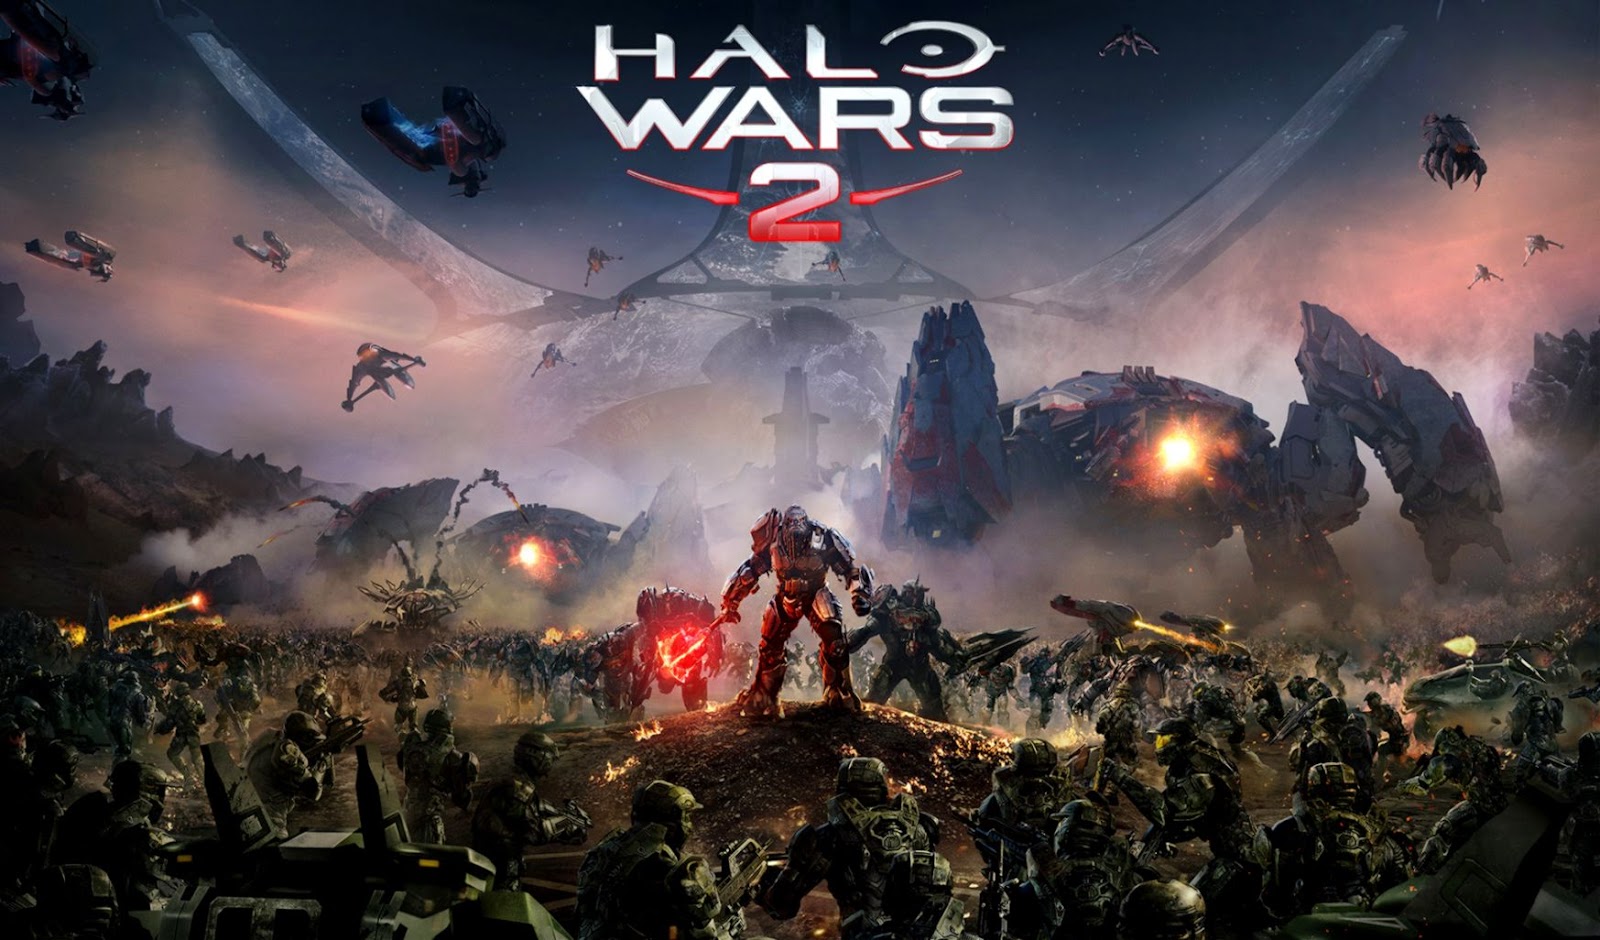 Halo Wars Hd Wallpaper